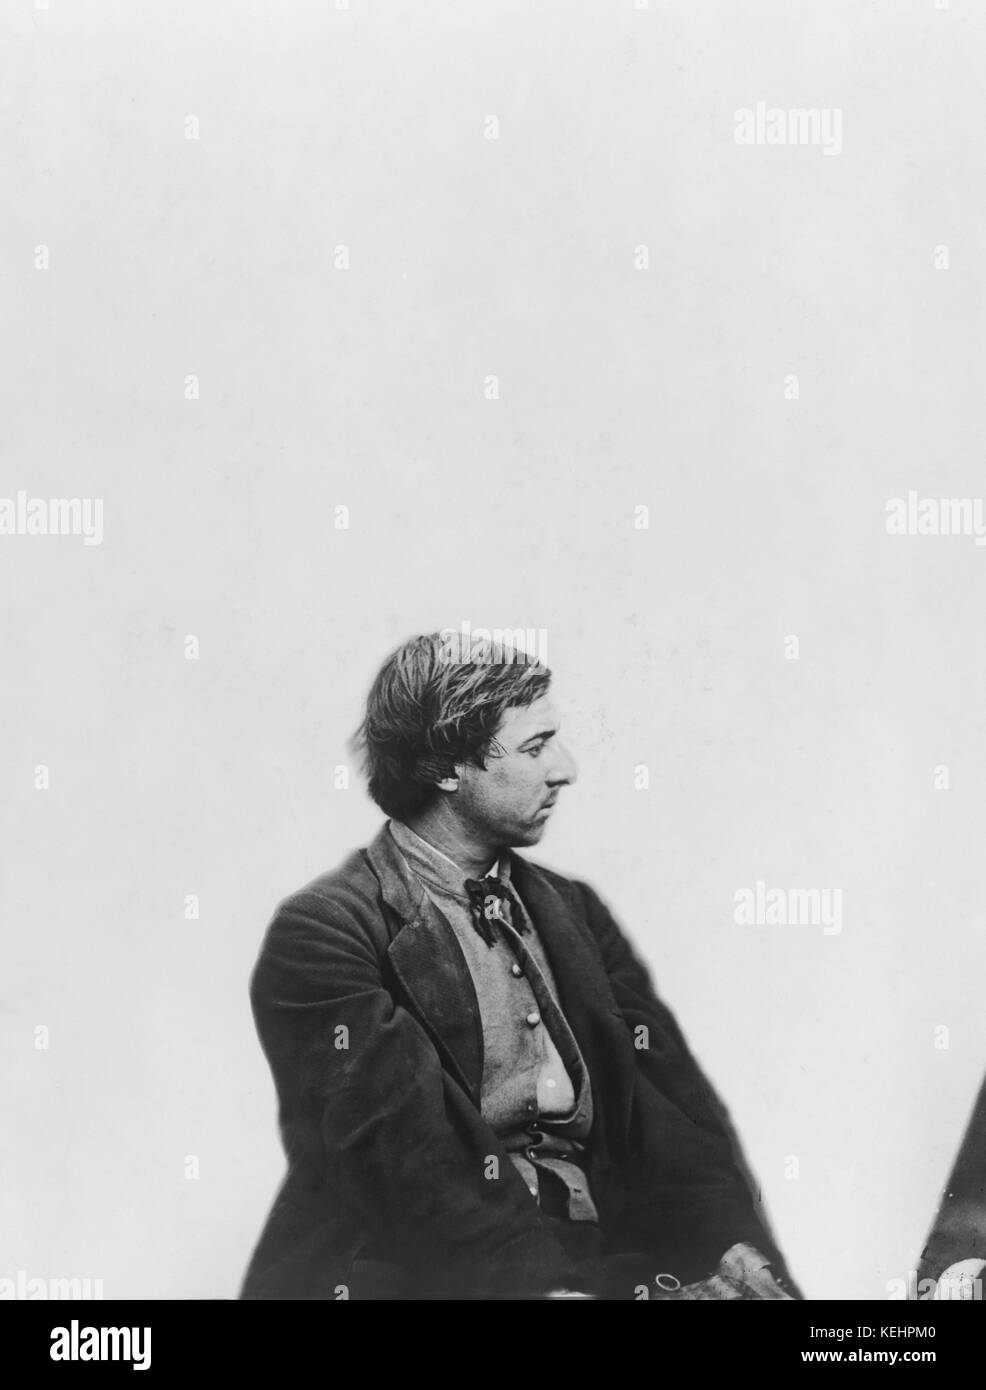 David e. Herold, einem der Abraham Lincolns Ermordung Verschwörer, Porträt, 1865 Stockfoto